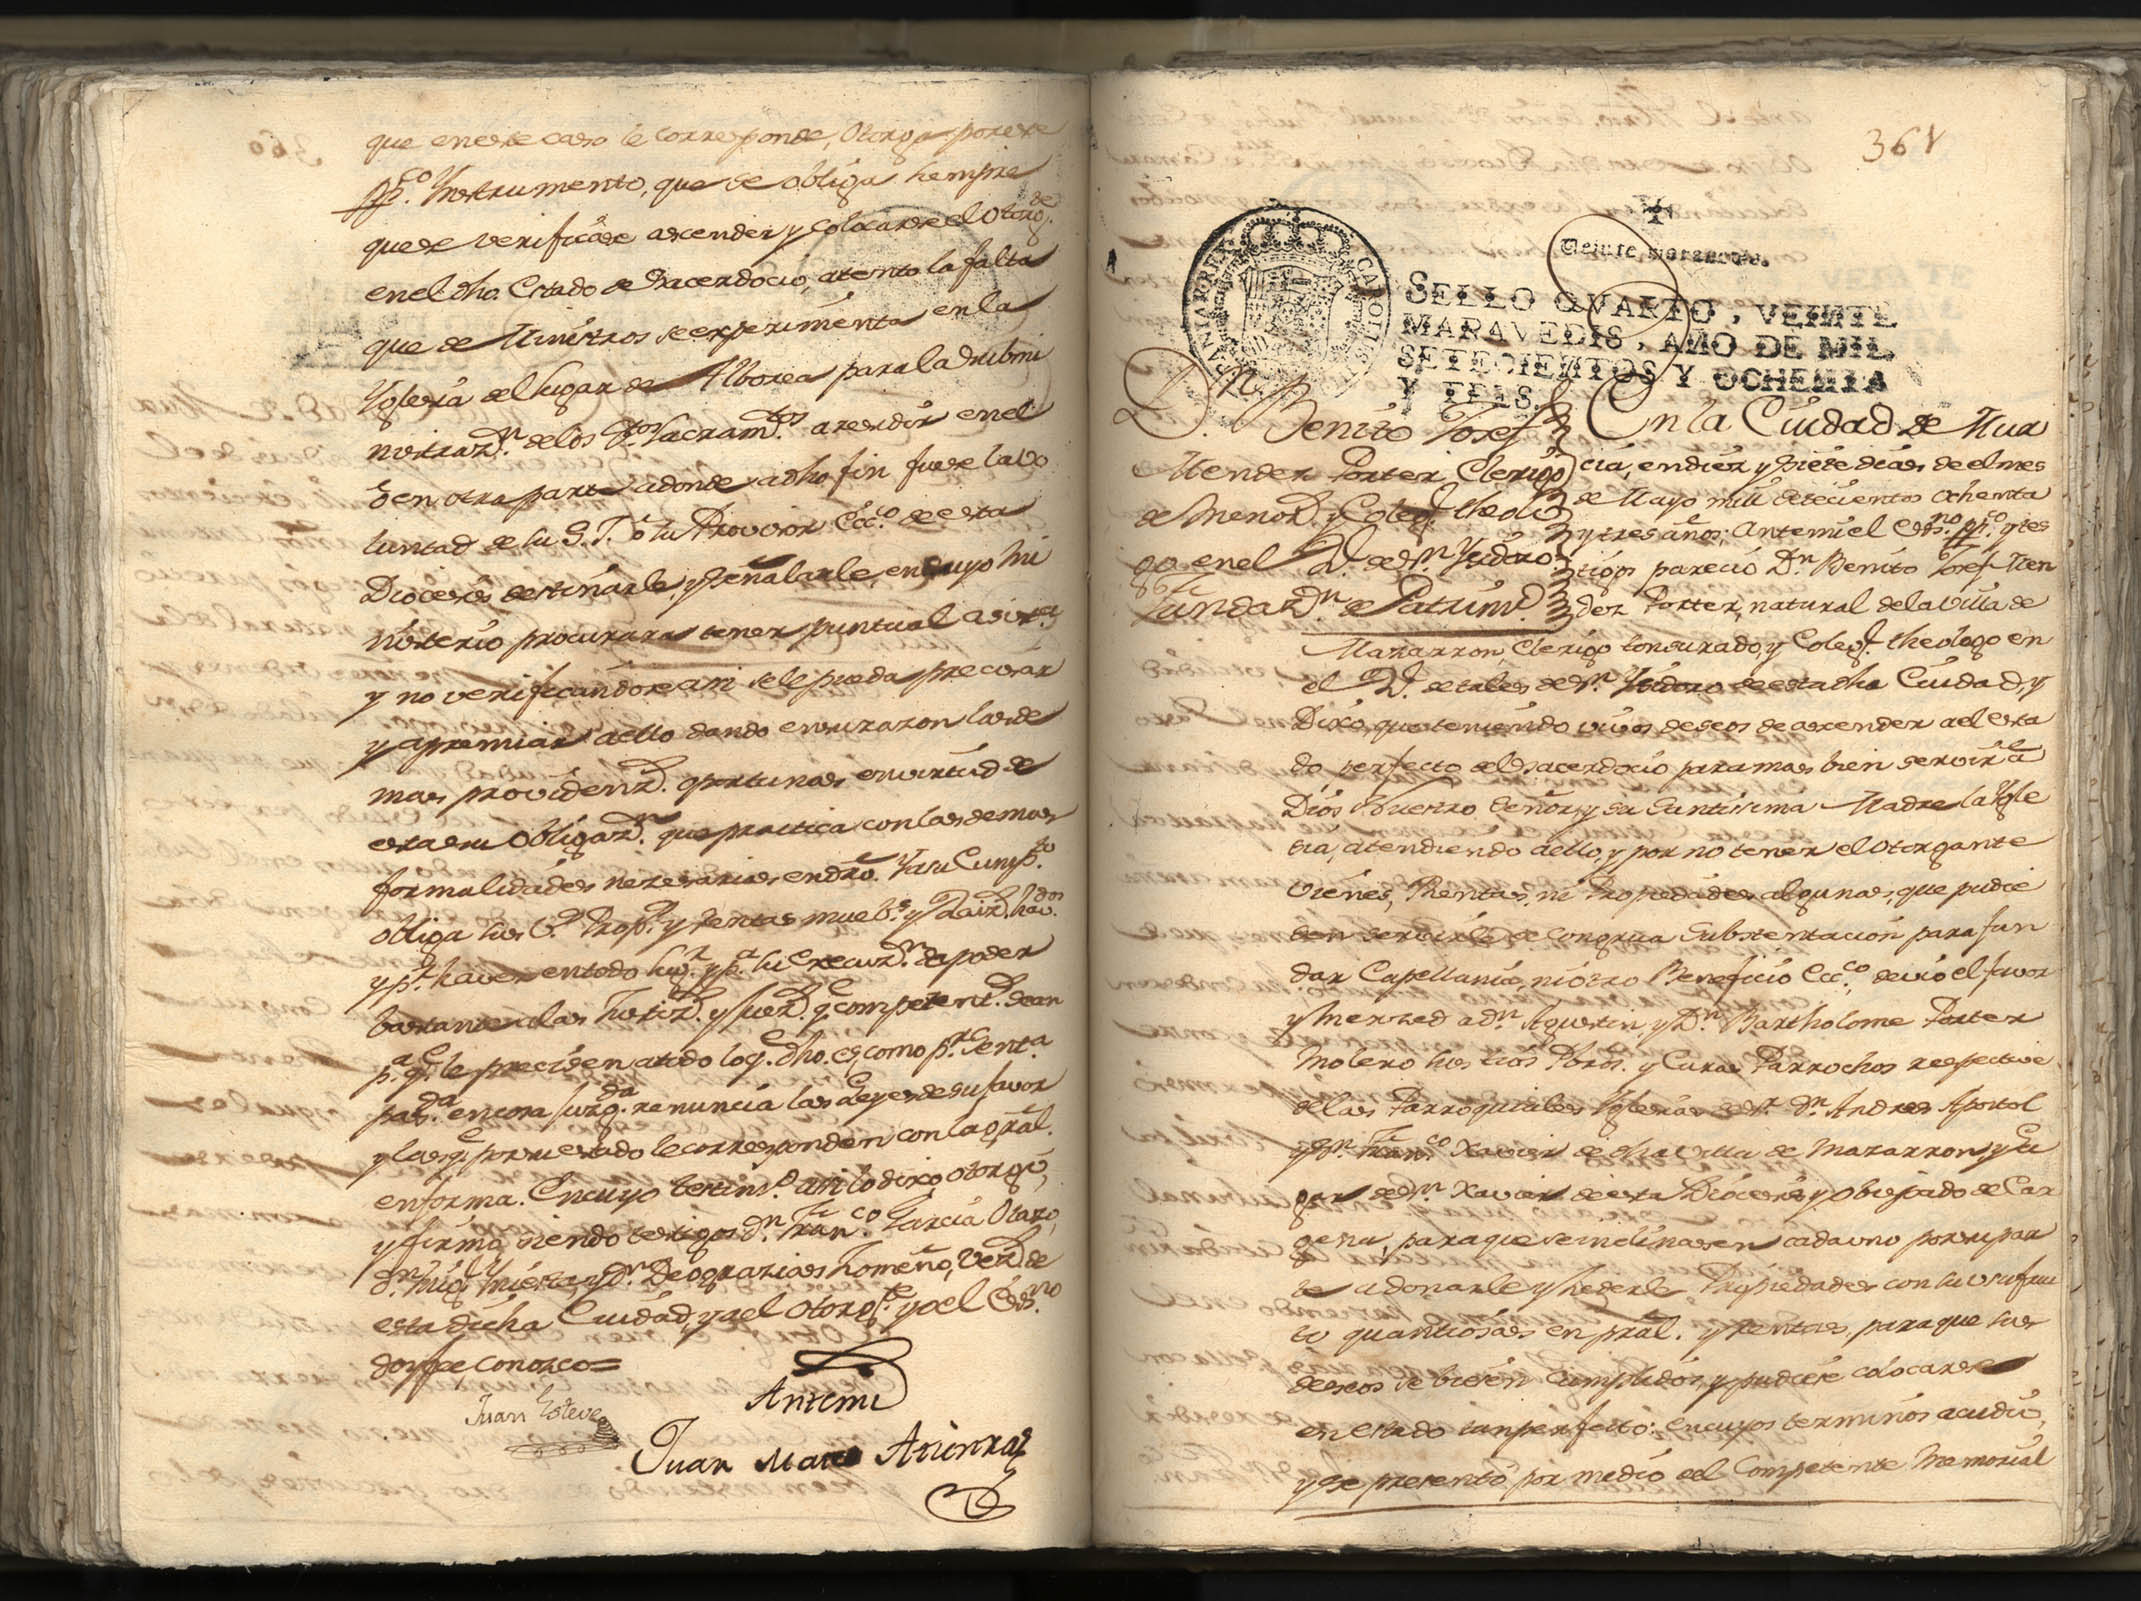 Registro de Juan Mateo Atienza, Murcia: T. 1 de enero a agosto de 1783.